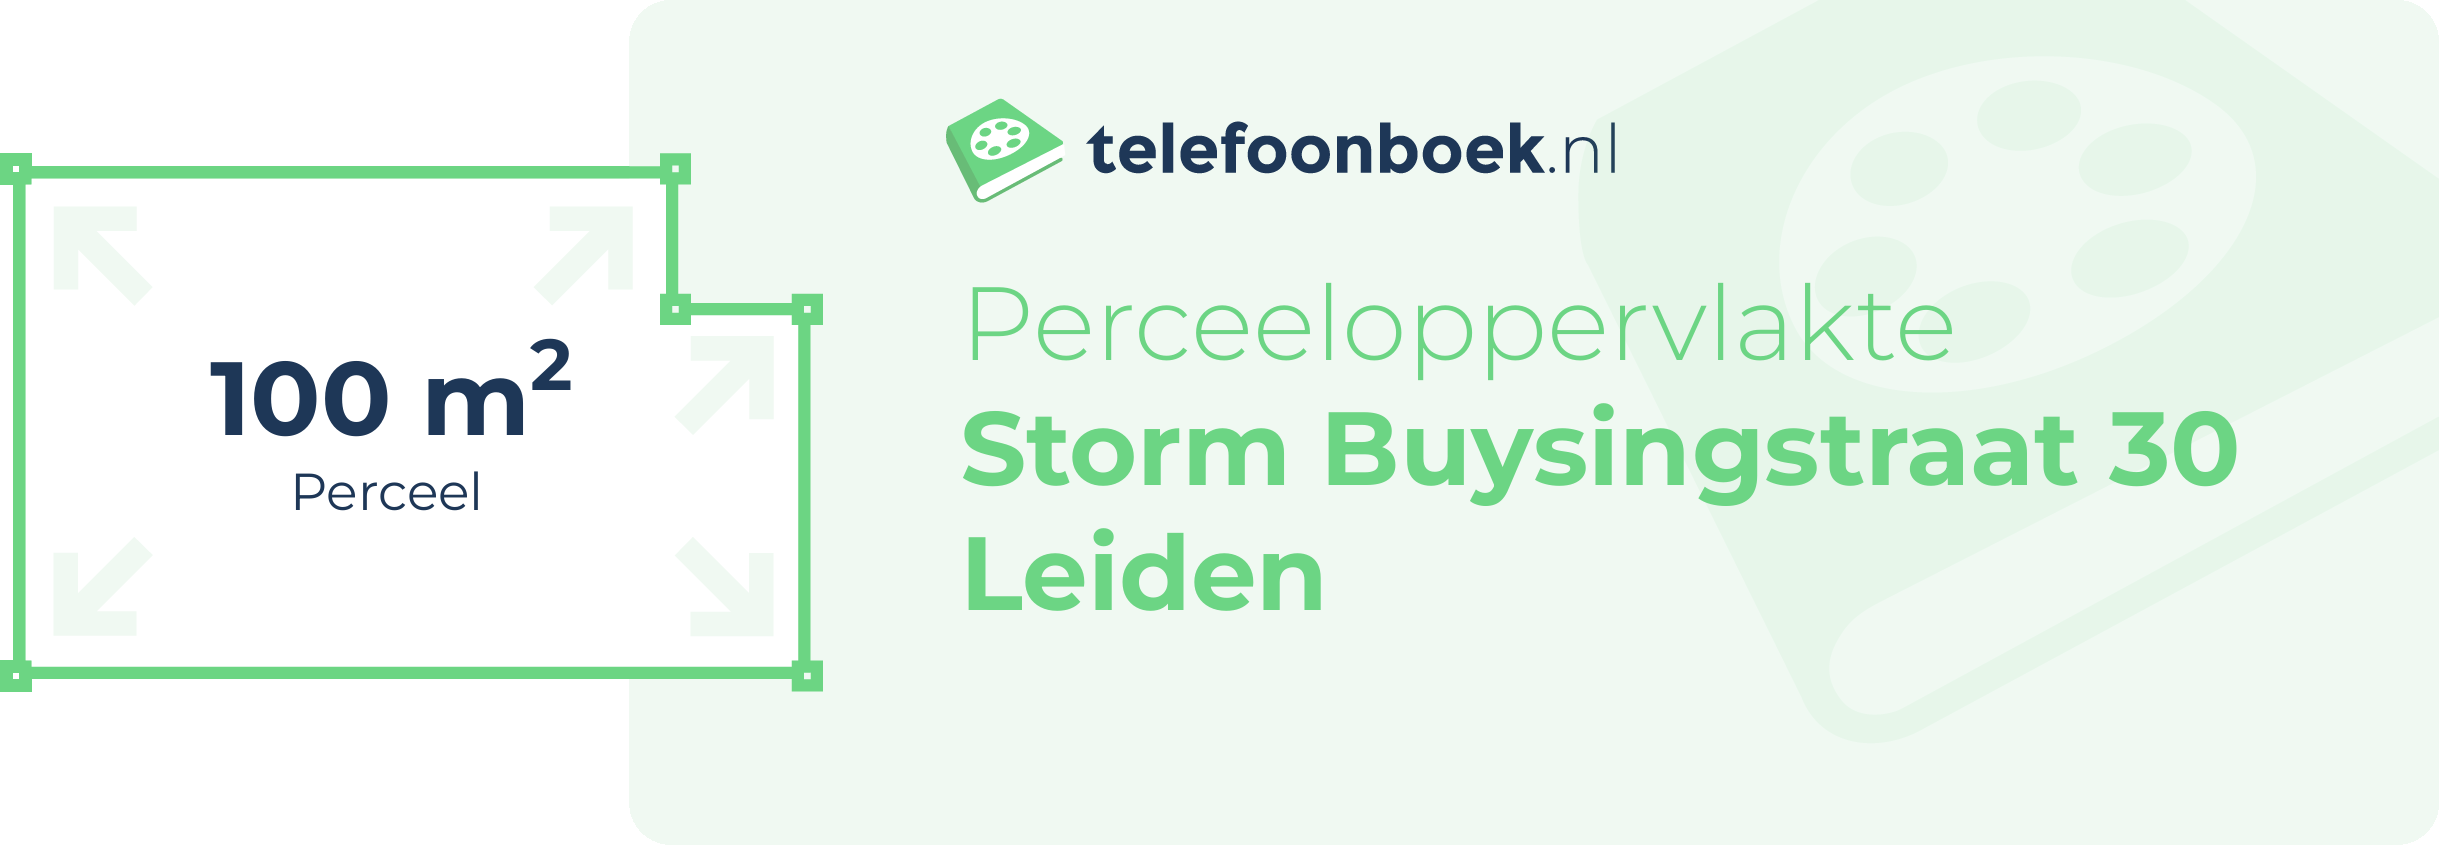 Perceeloppervlakte Storm Buysingstraat 30 Leiden